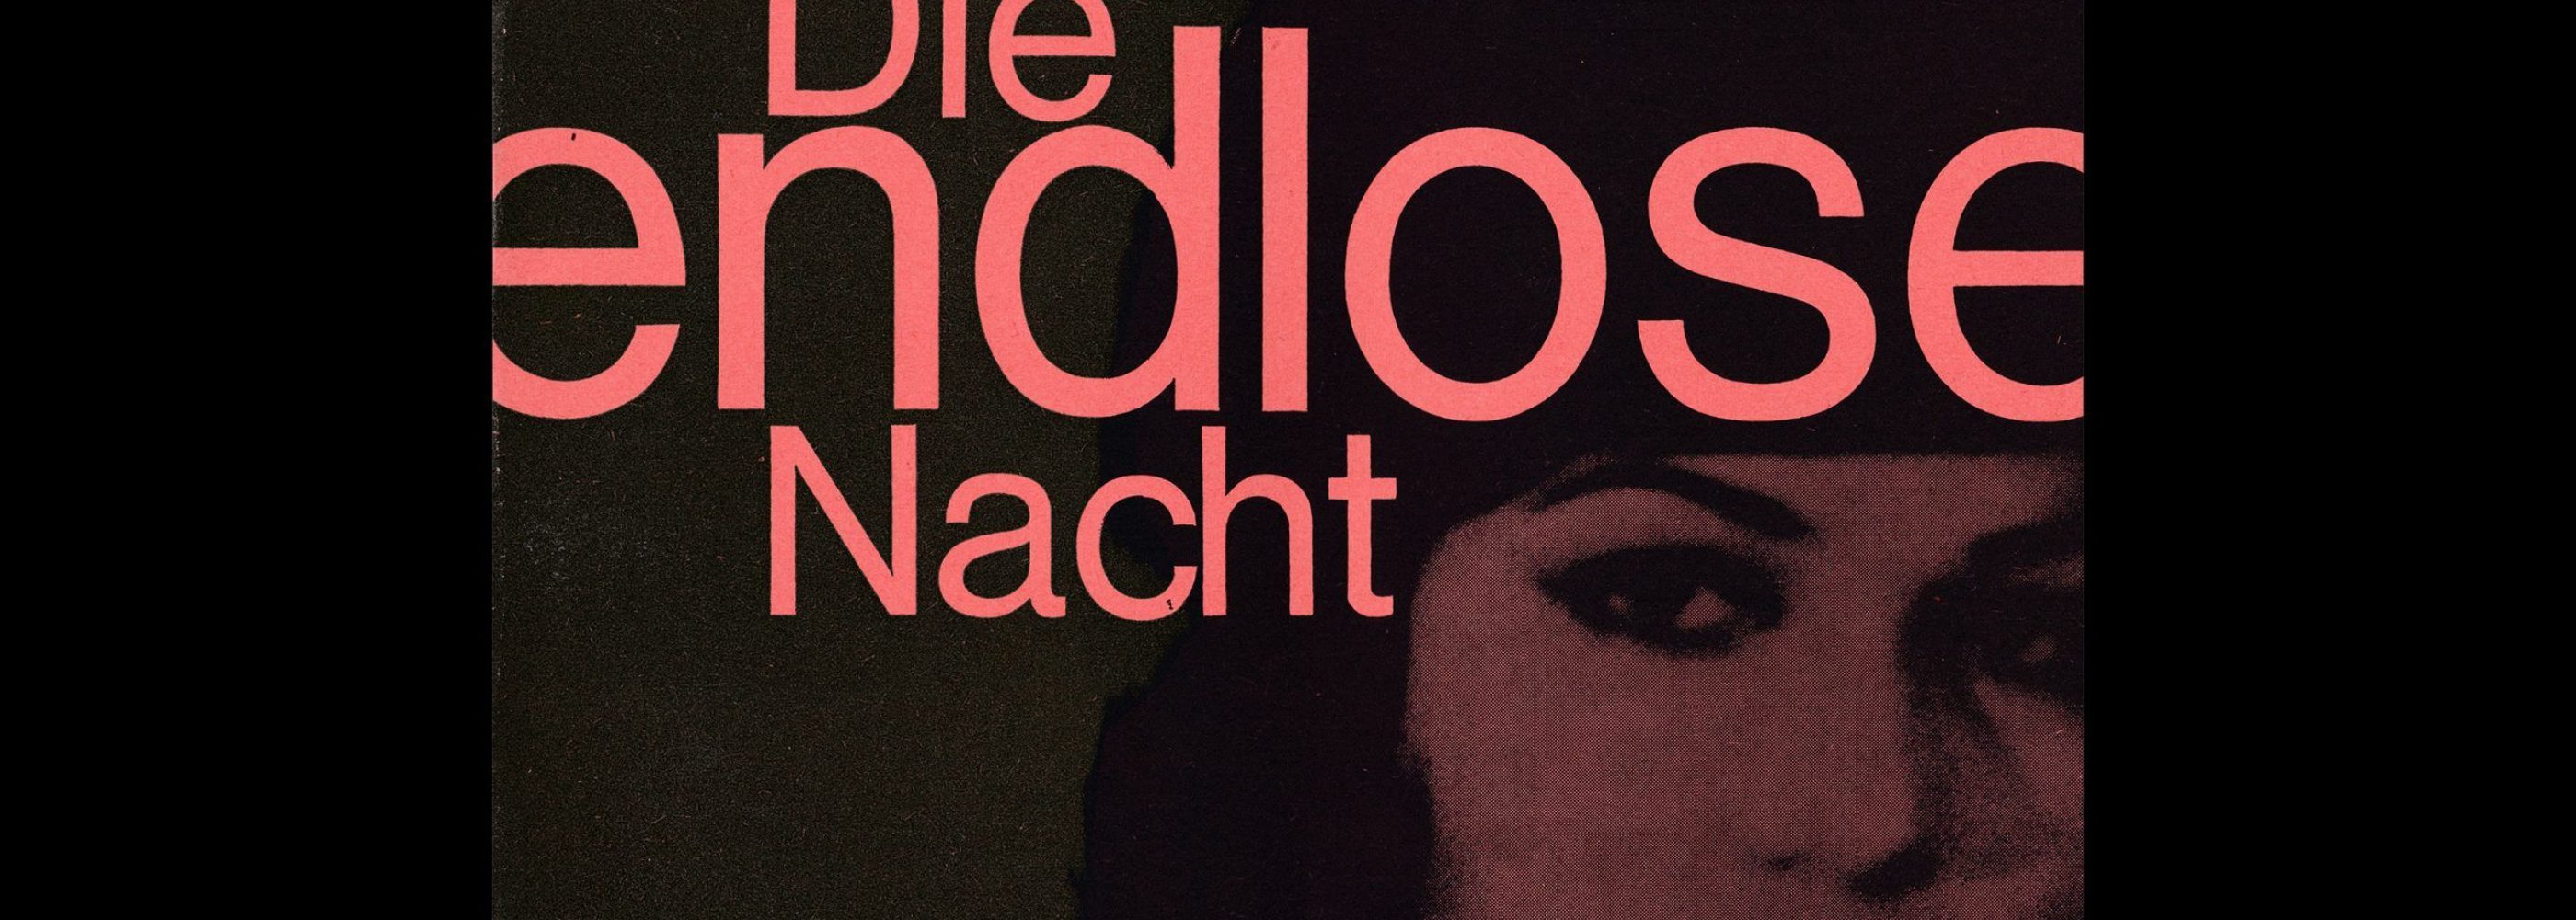 Atlas Filmheft 19 - Die endlose Nacht designed by Fischer-Nosbisch